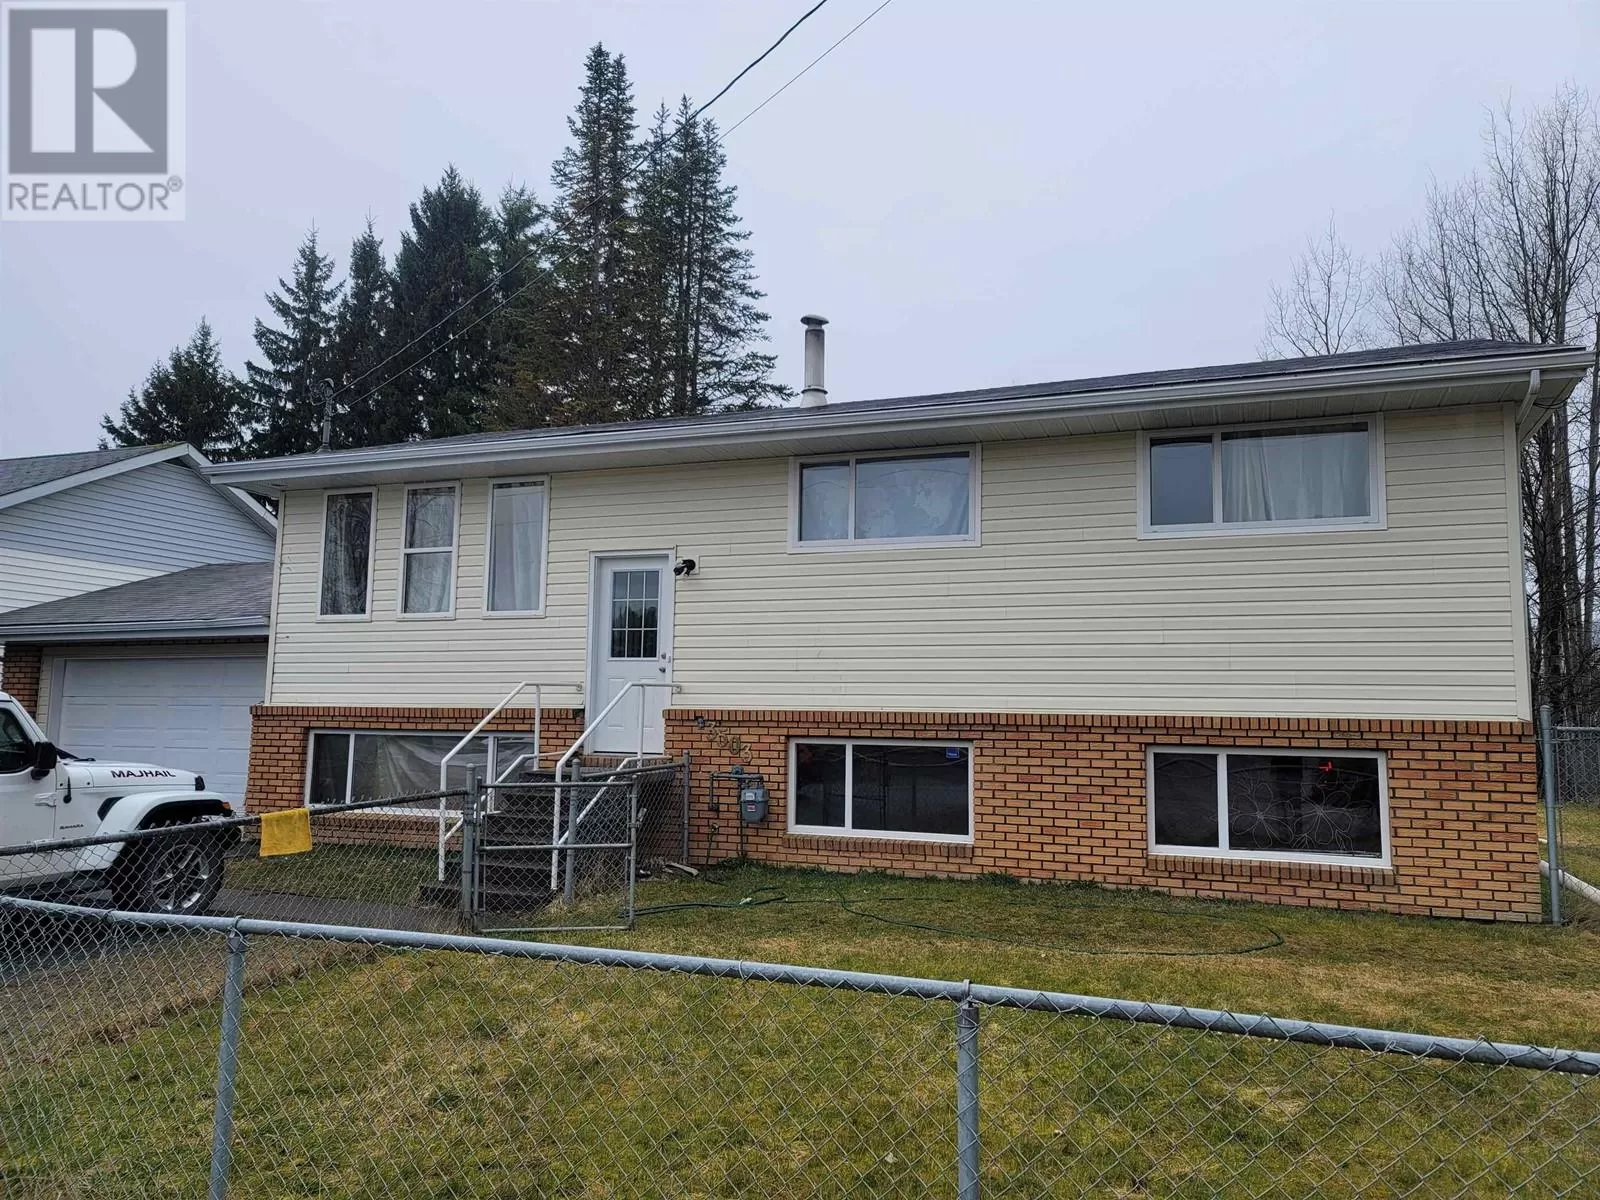 House for rent: 3503 Sparks Street, Terrace, British Columbia V8G 2V4